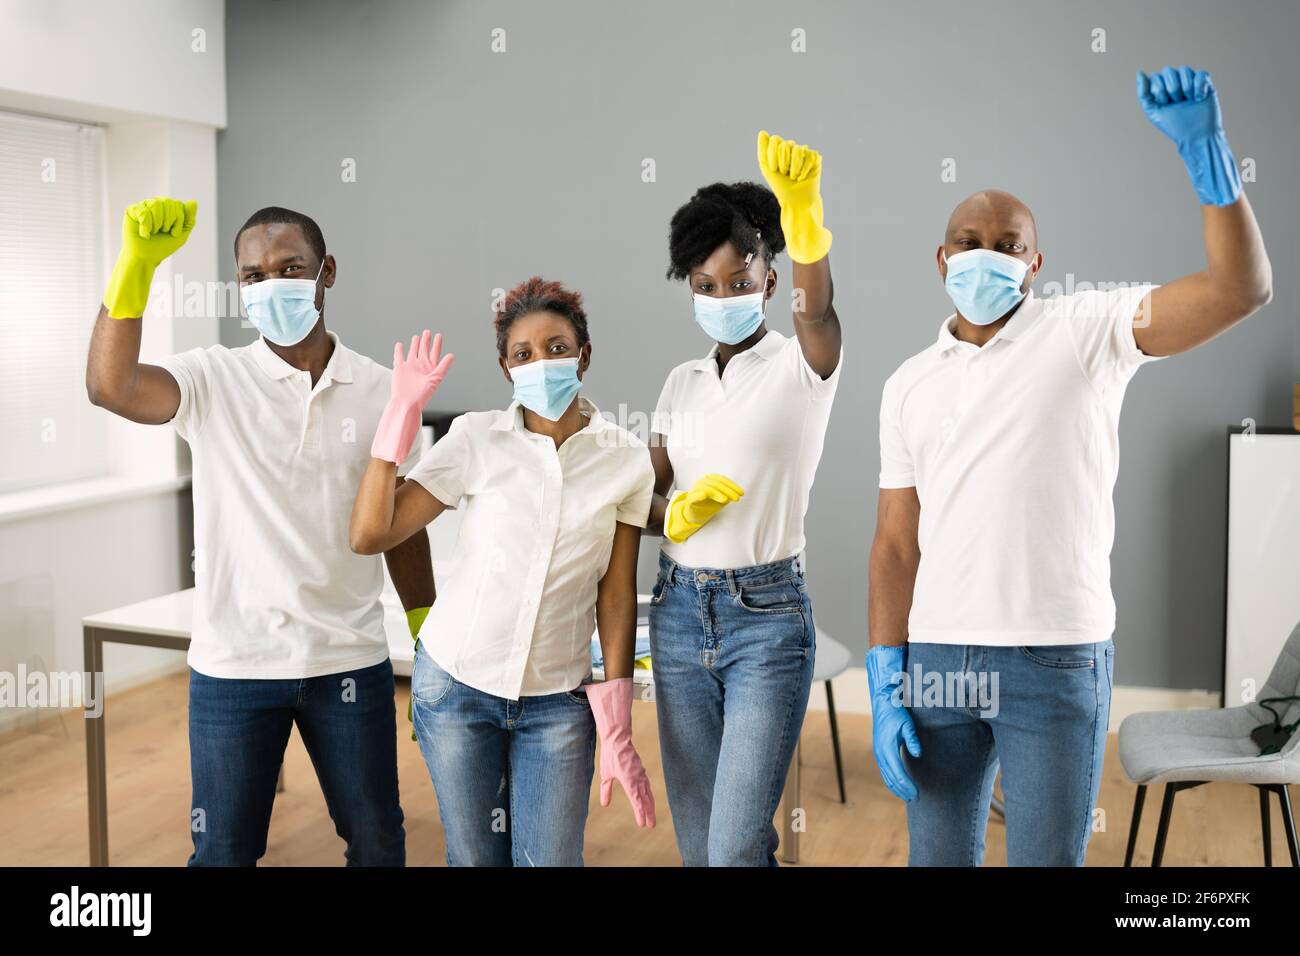 Janitor Africain nettoyage debout dans le masque de visage Banque D'Images